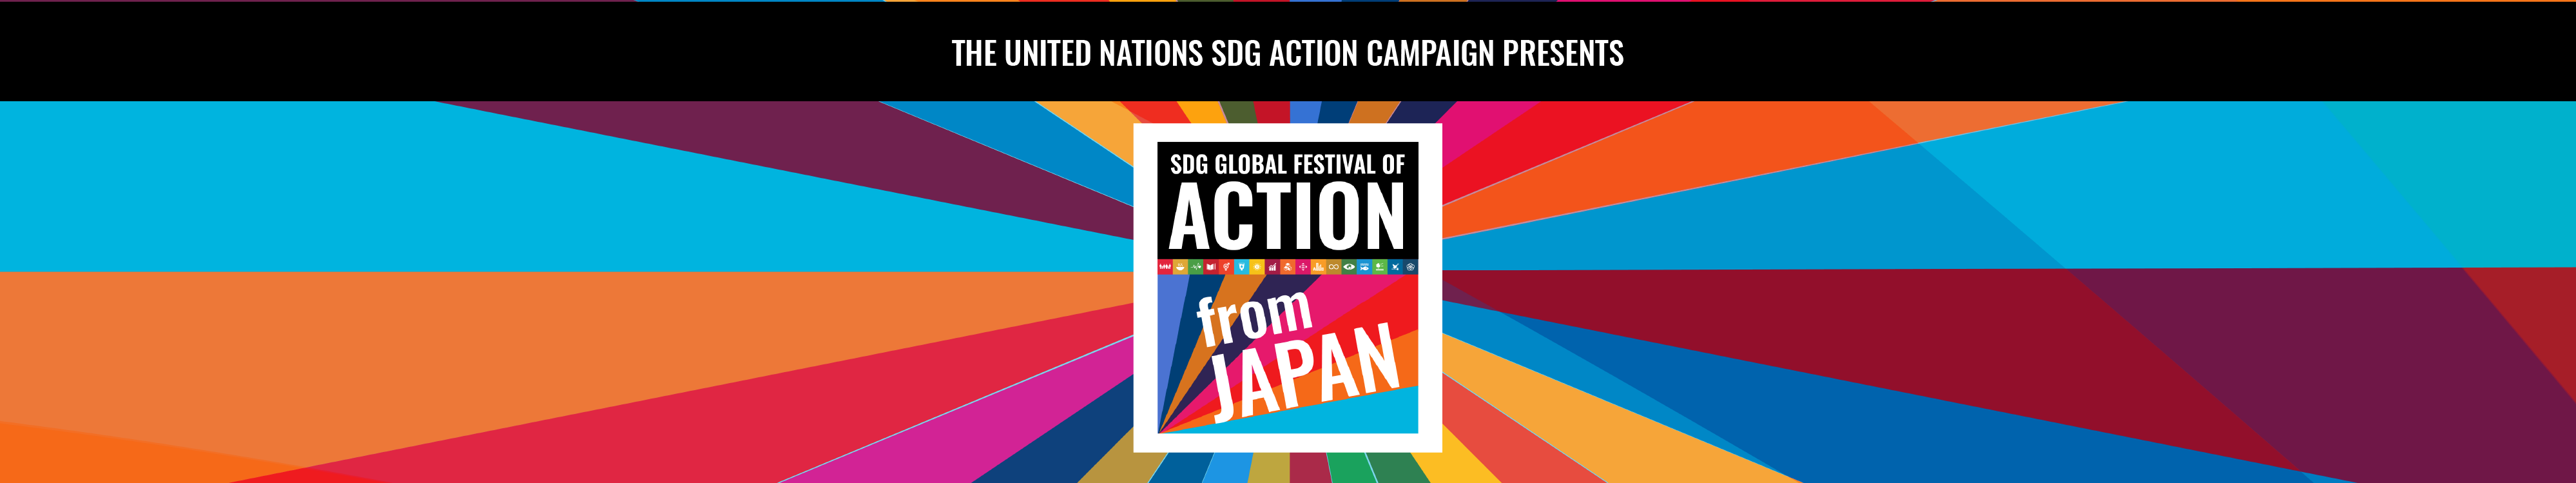 SDG Global Festival of Action 2021